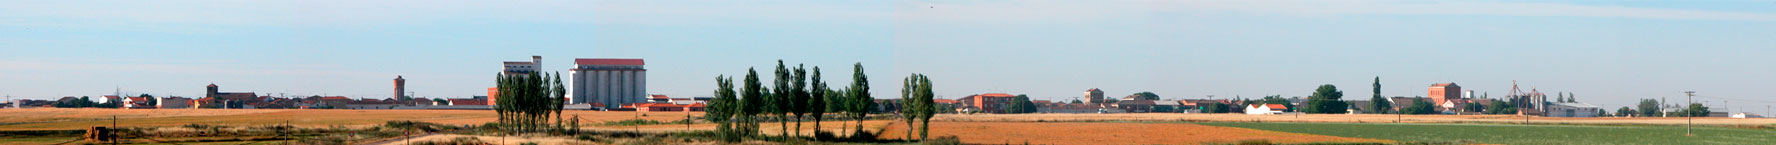 Legumbres Iglesias, ubicada en Gomecello, Comarca de La Armuña. Salamanca.